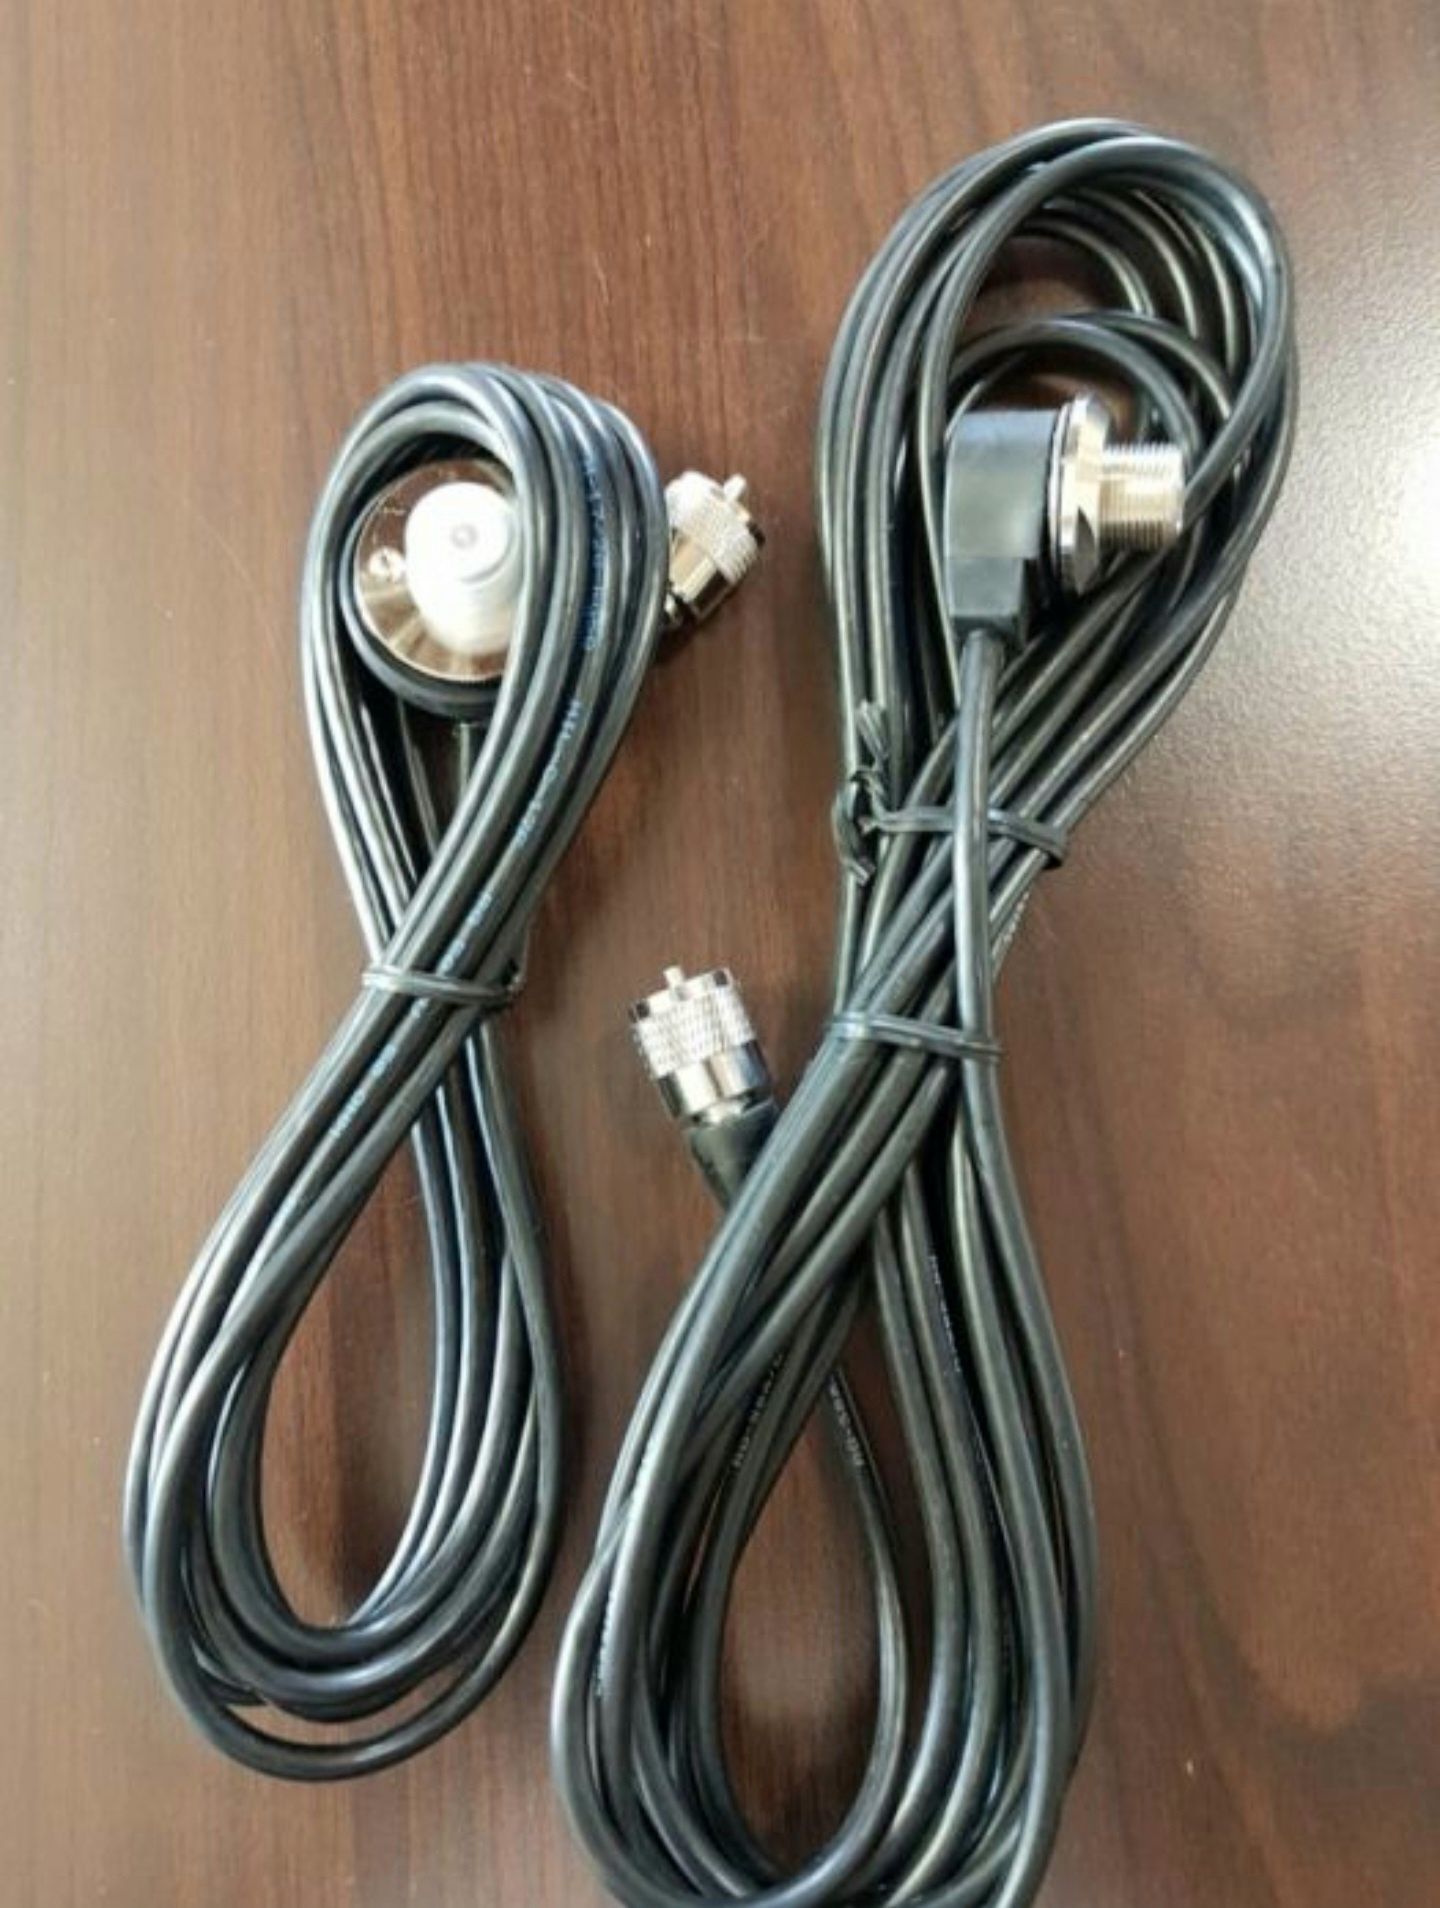 Cablu de legatura - Antena radio CB (prindere fixa)